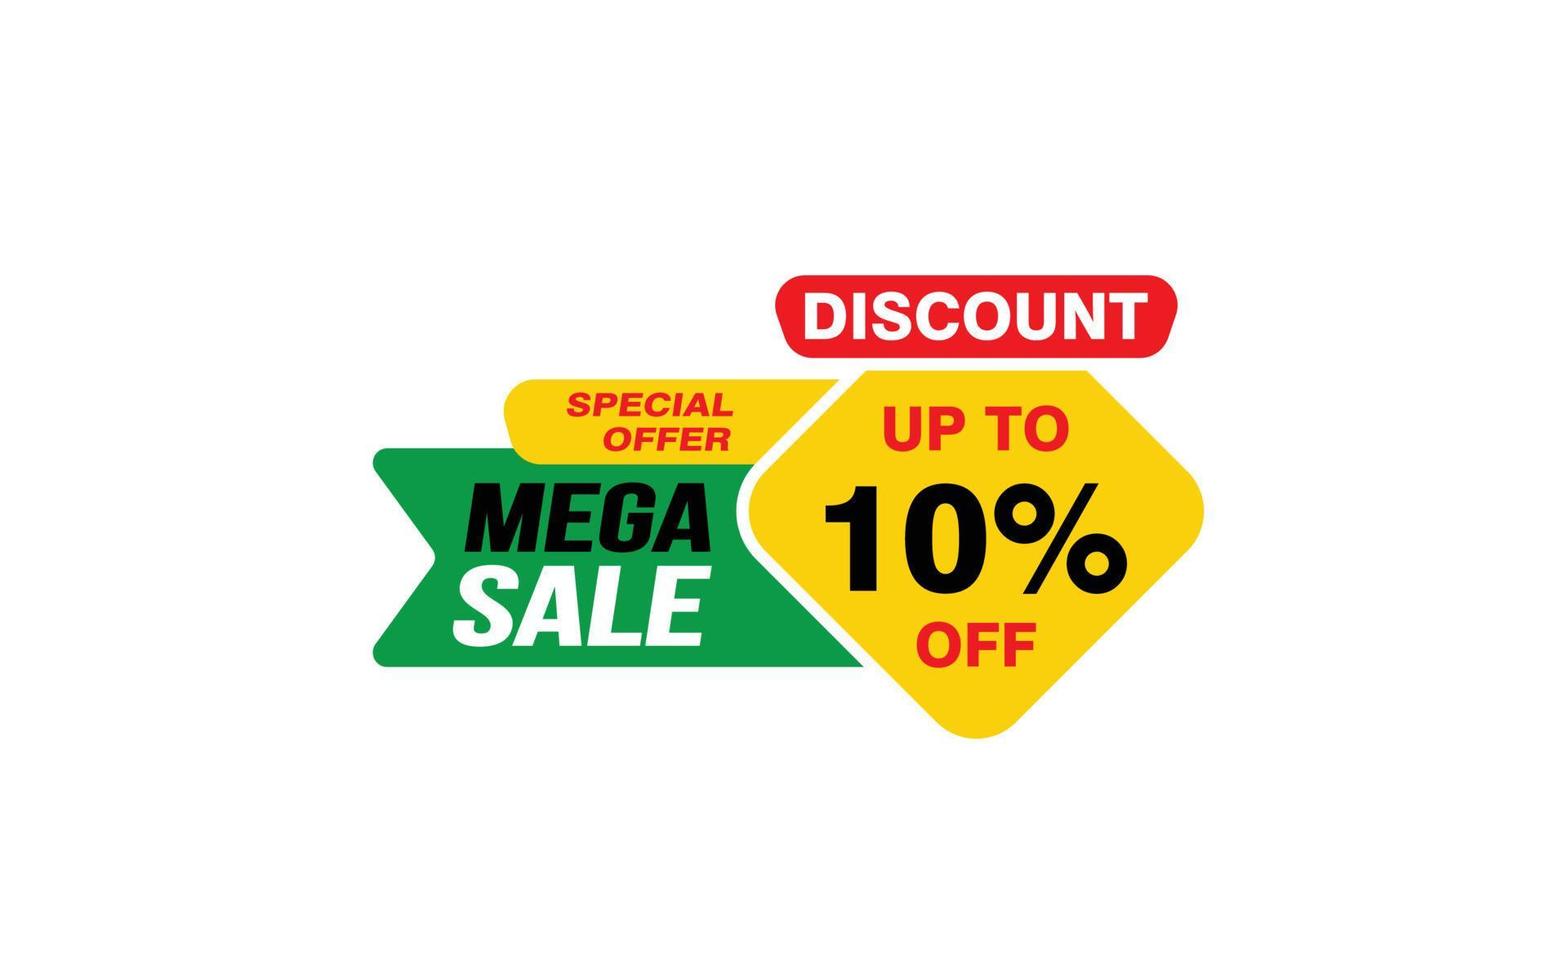 Oferta de mega venda de 10%, liberação, layout de banner de promoção com estilo de adesivo. vetor